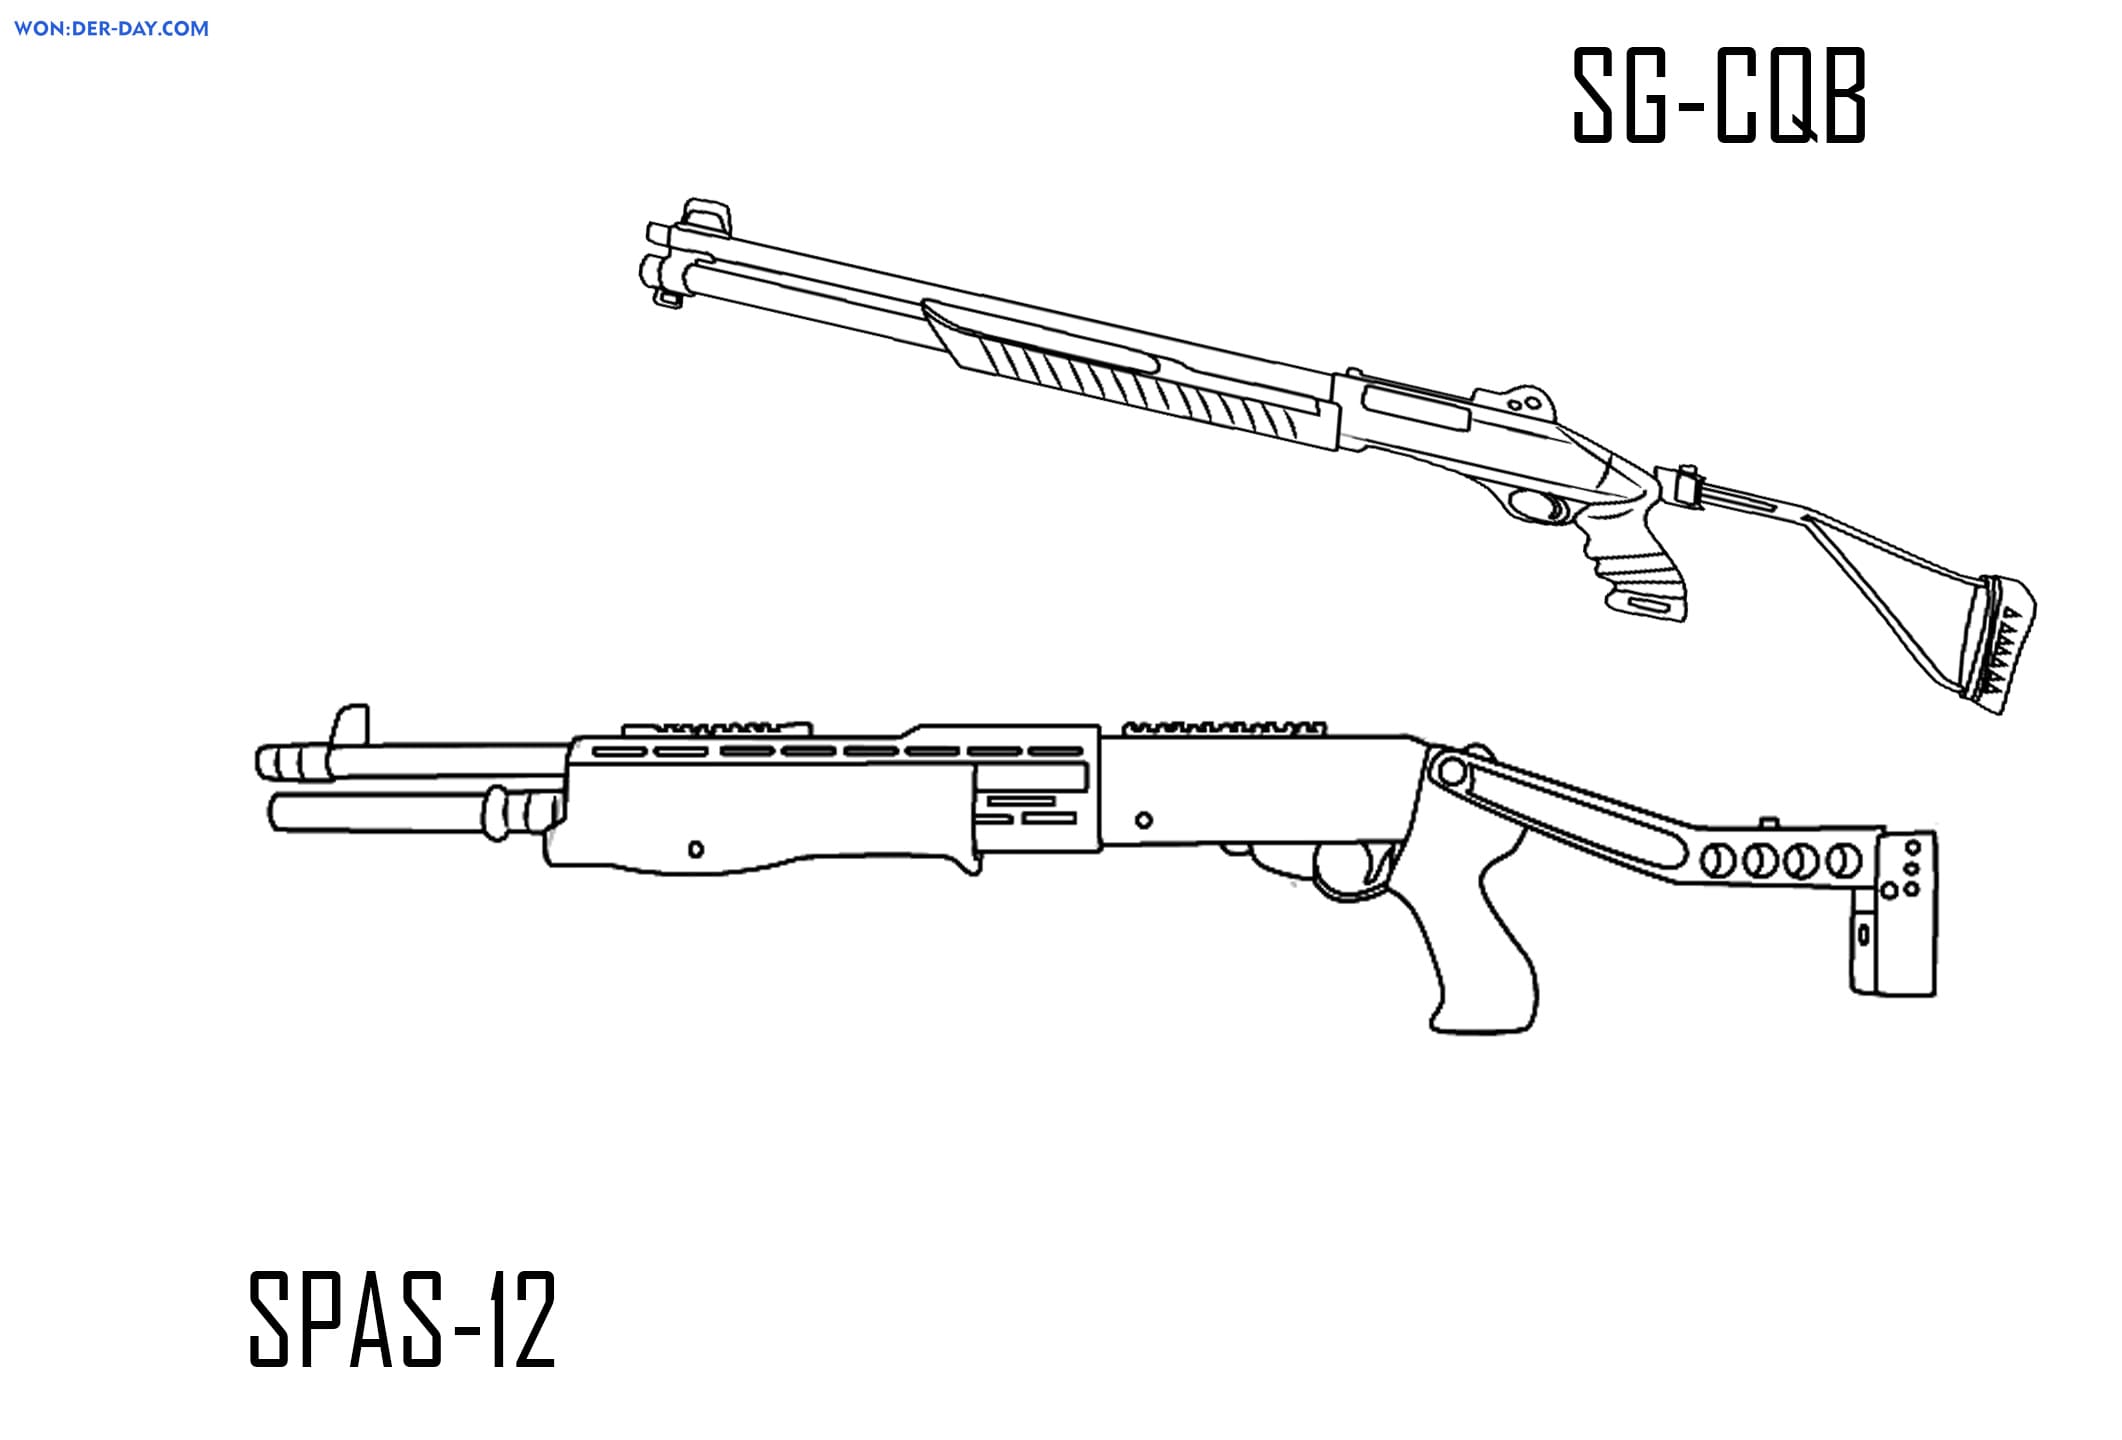 SG-CQB and SPAS-12.